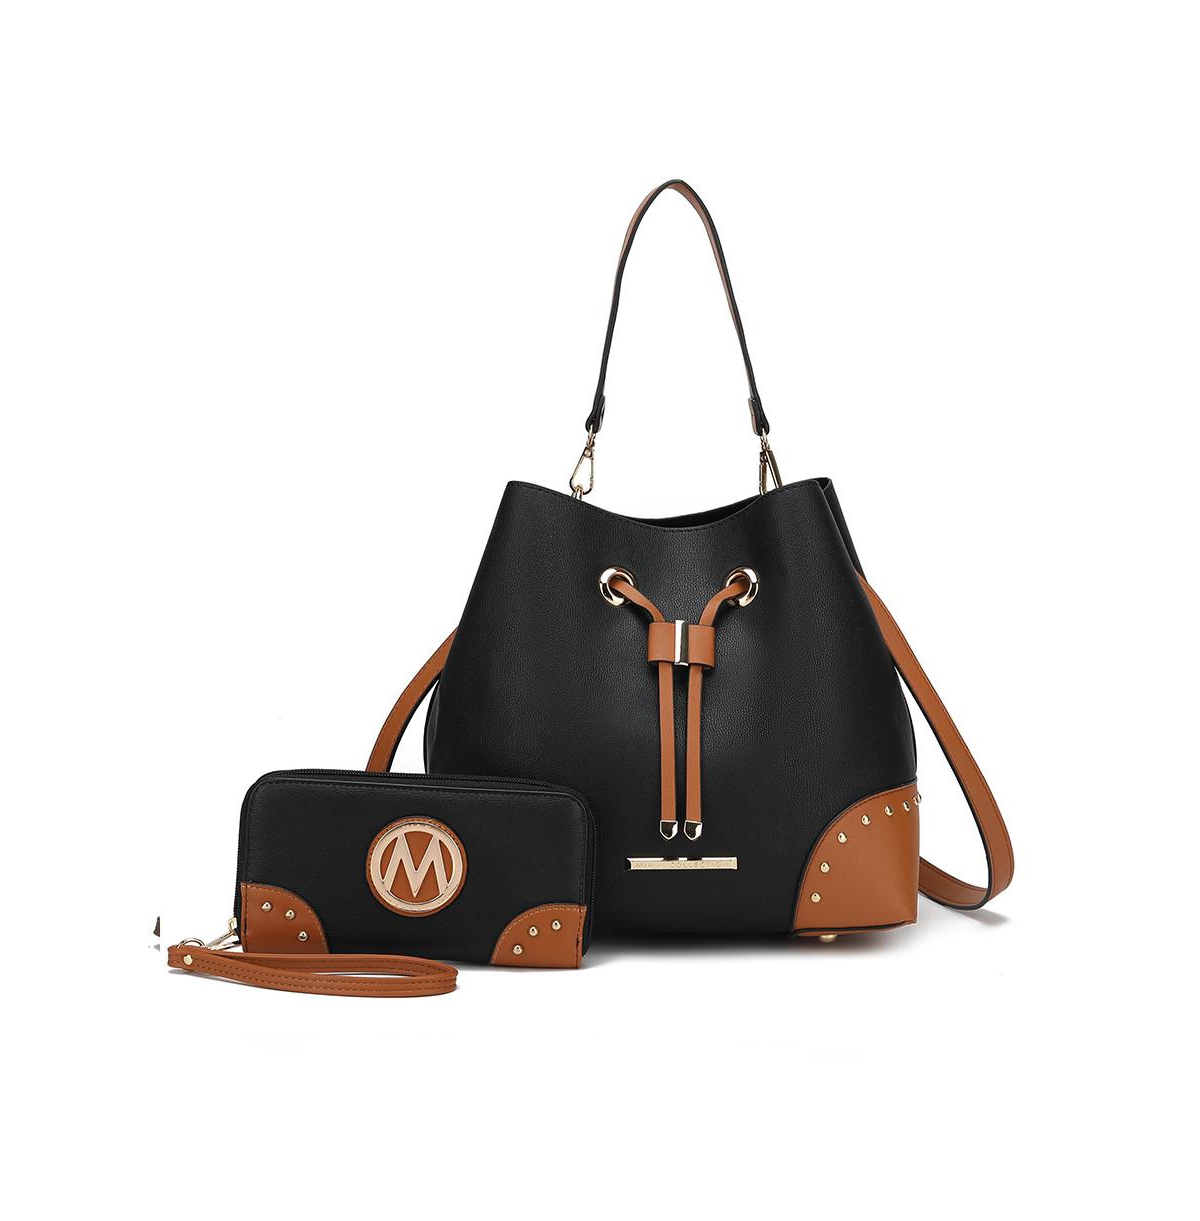 Candice Color Block Bucket Bag with Wallet by Mia K - Cognac black